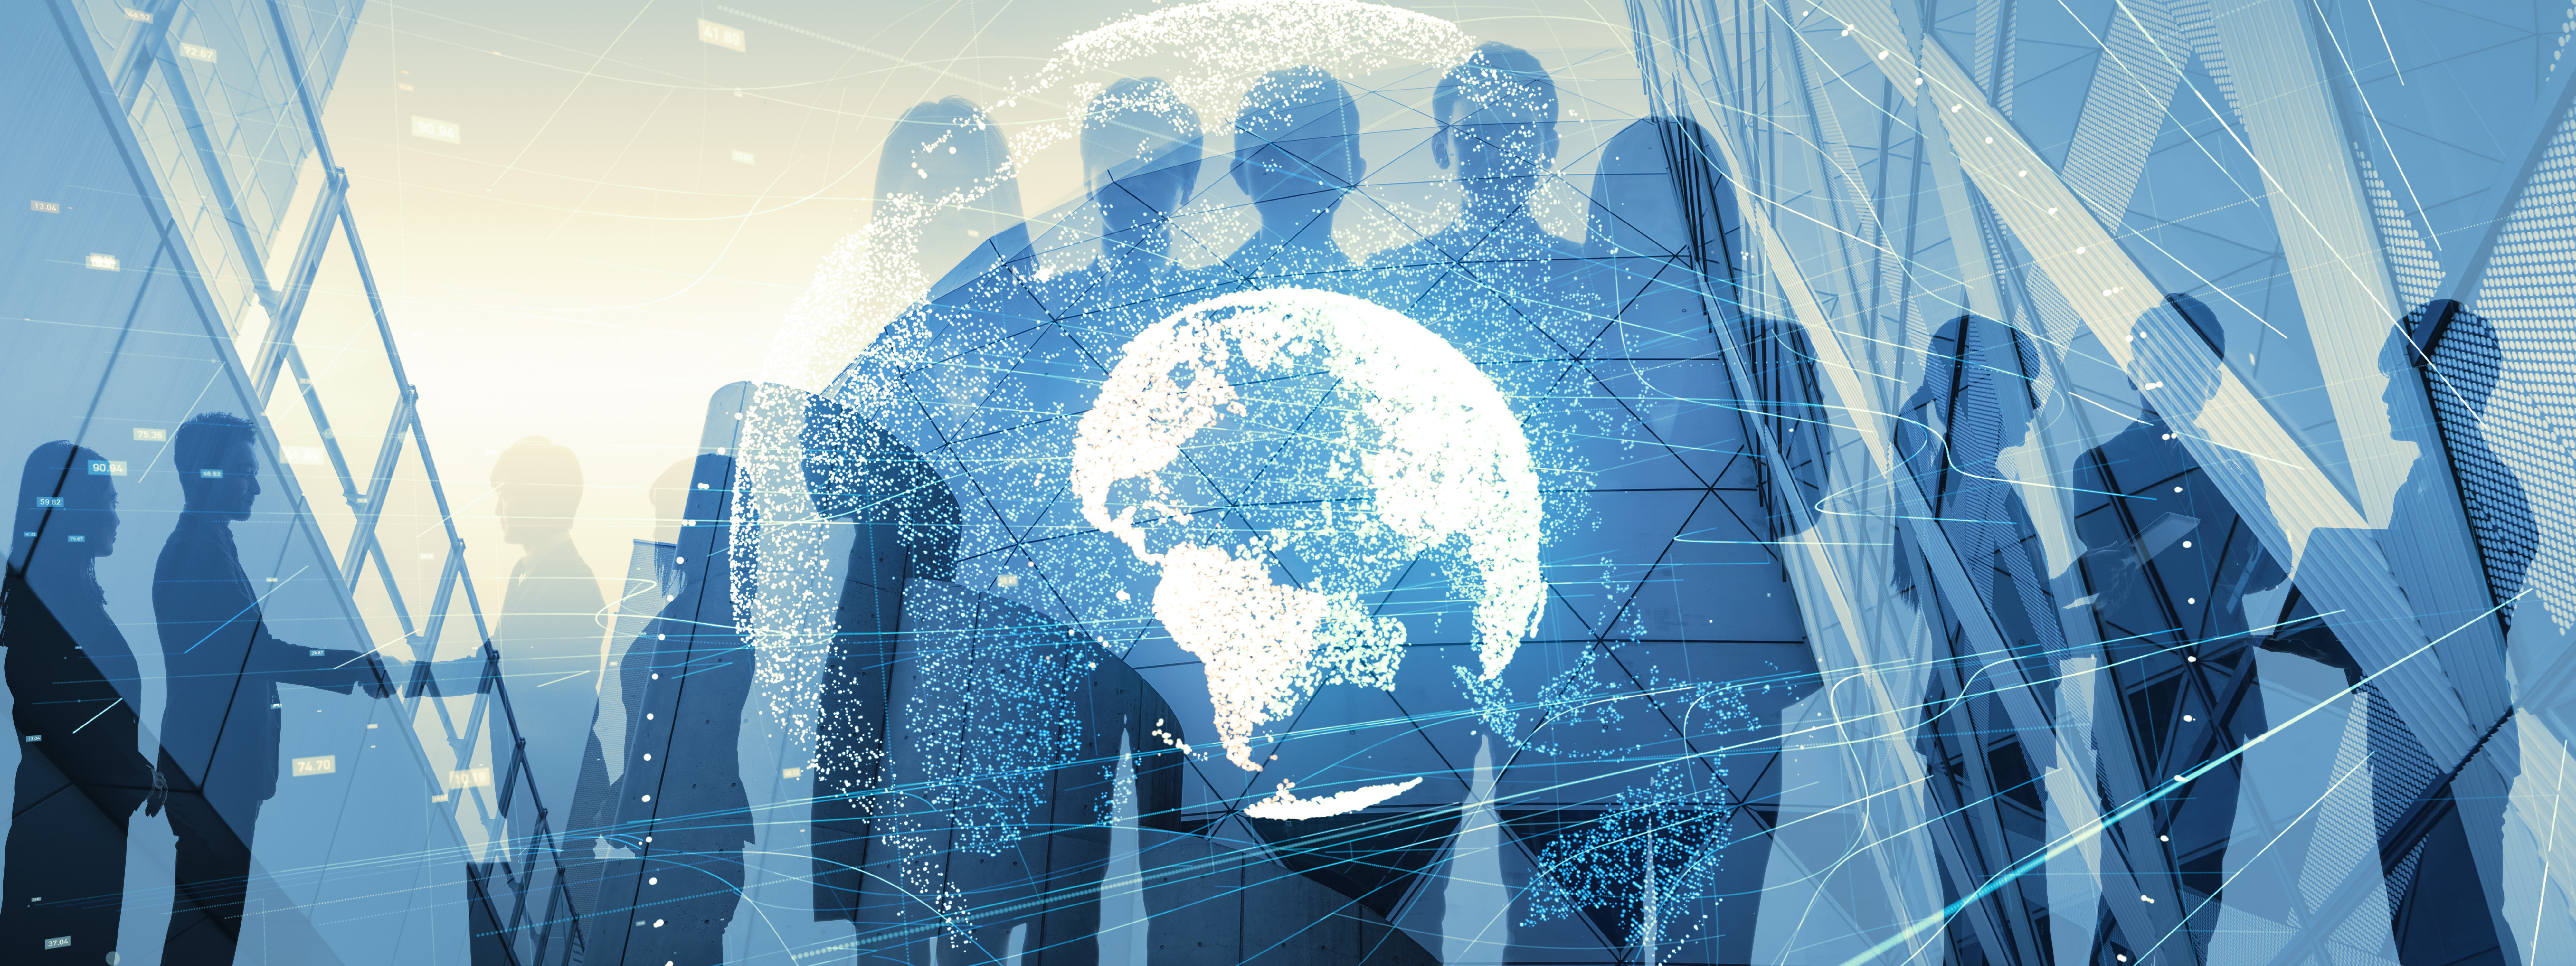 Concetto di business globale che mostra silhouette di persone in piedi dietro un mappamondo sovrapposto con una rete che indica interconnessione